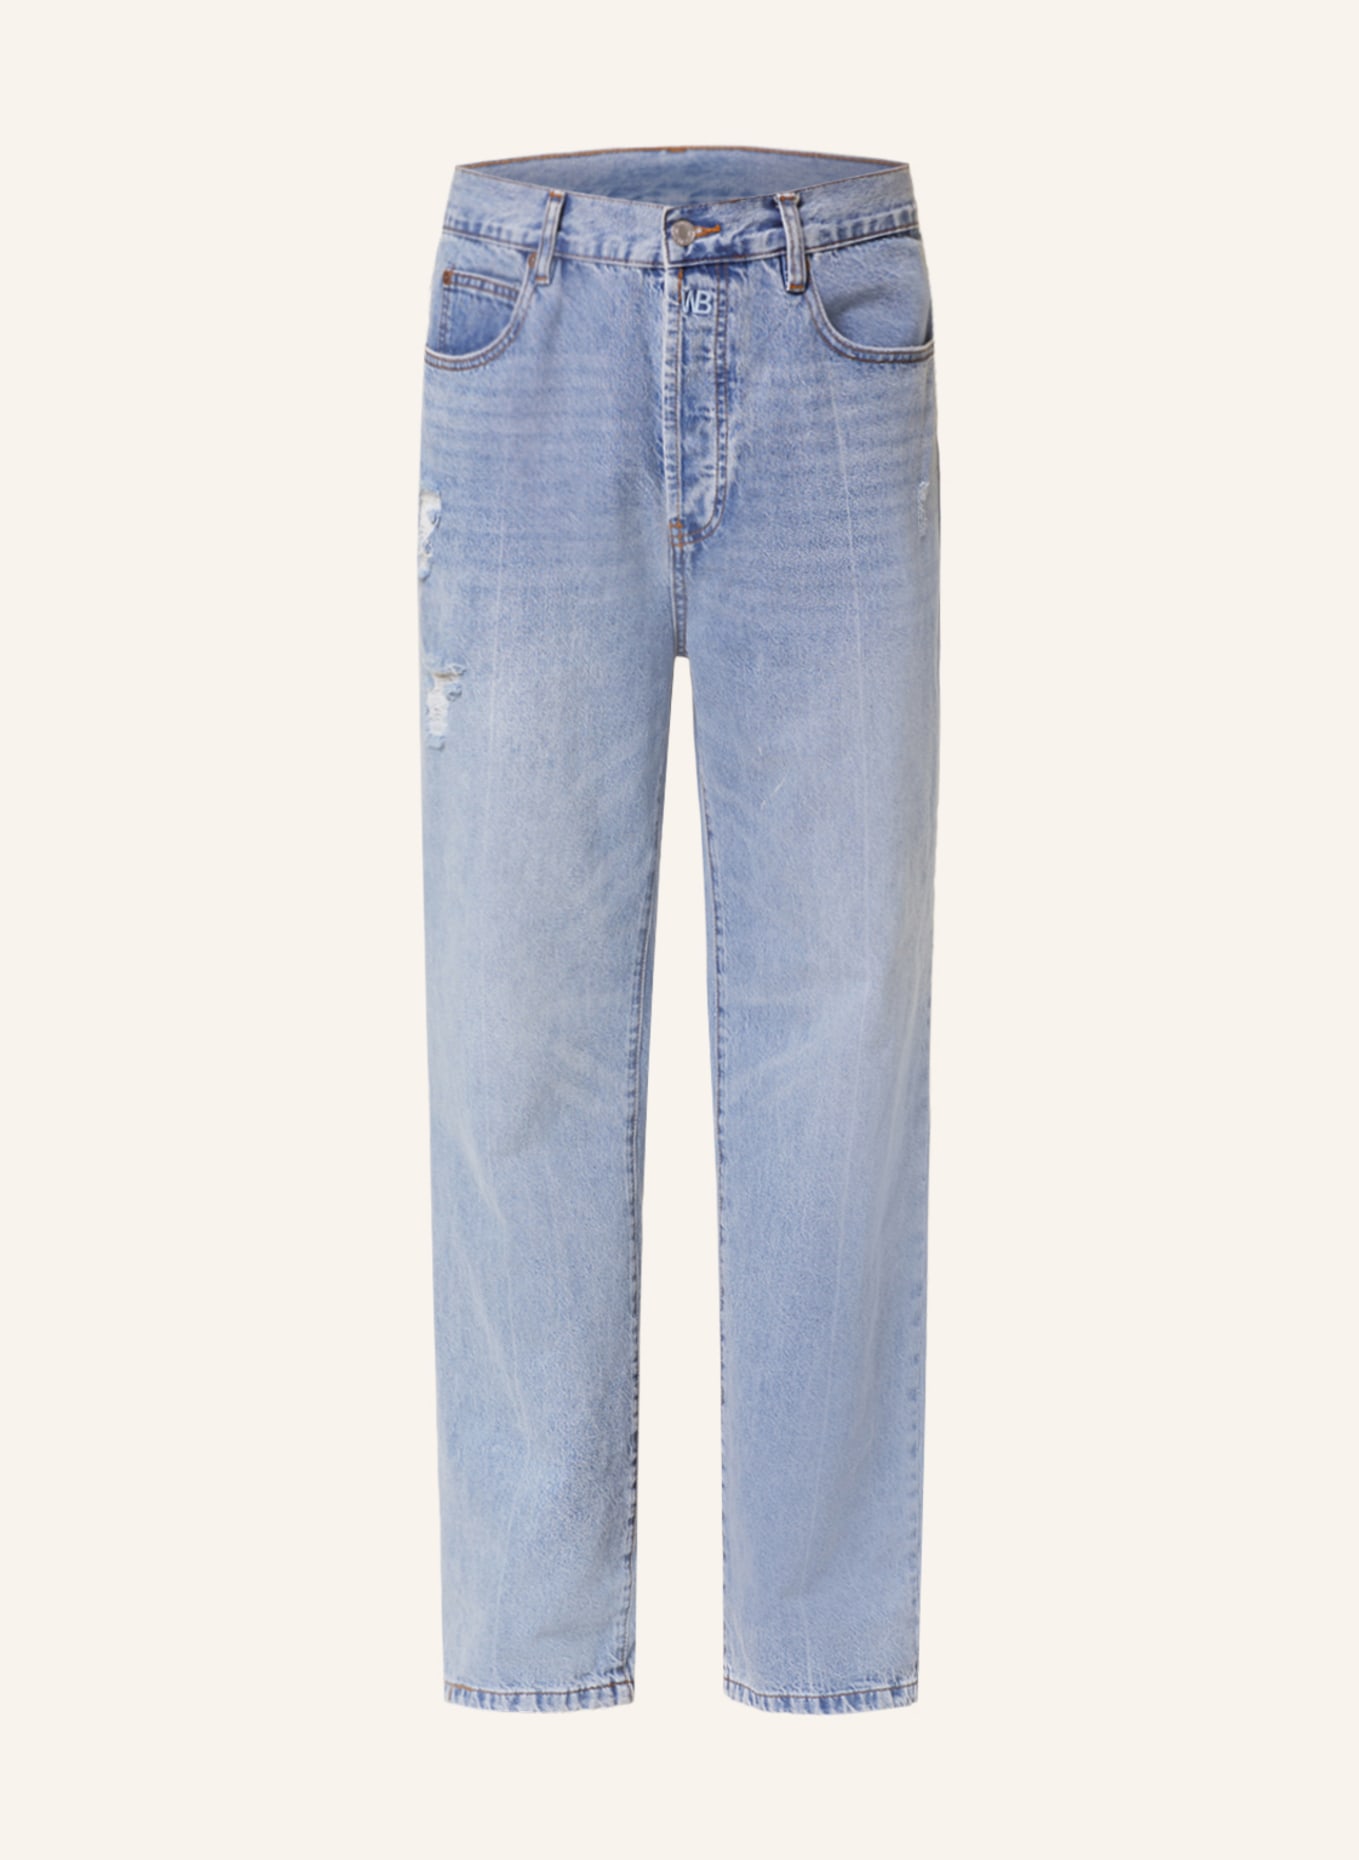 WRSTBHVR Jeans DILLAN regular fit, Color: 5014 MID BLUE (Image 1)